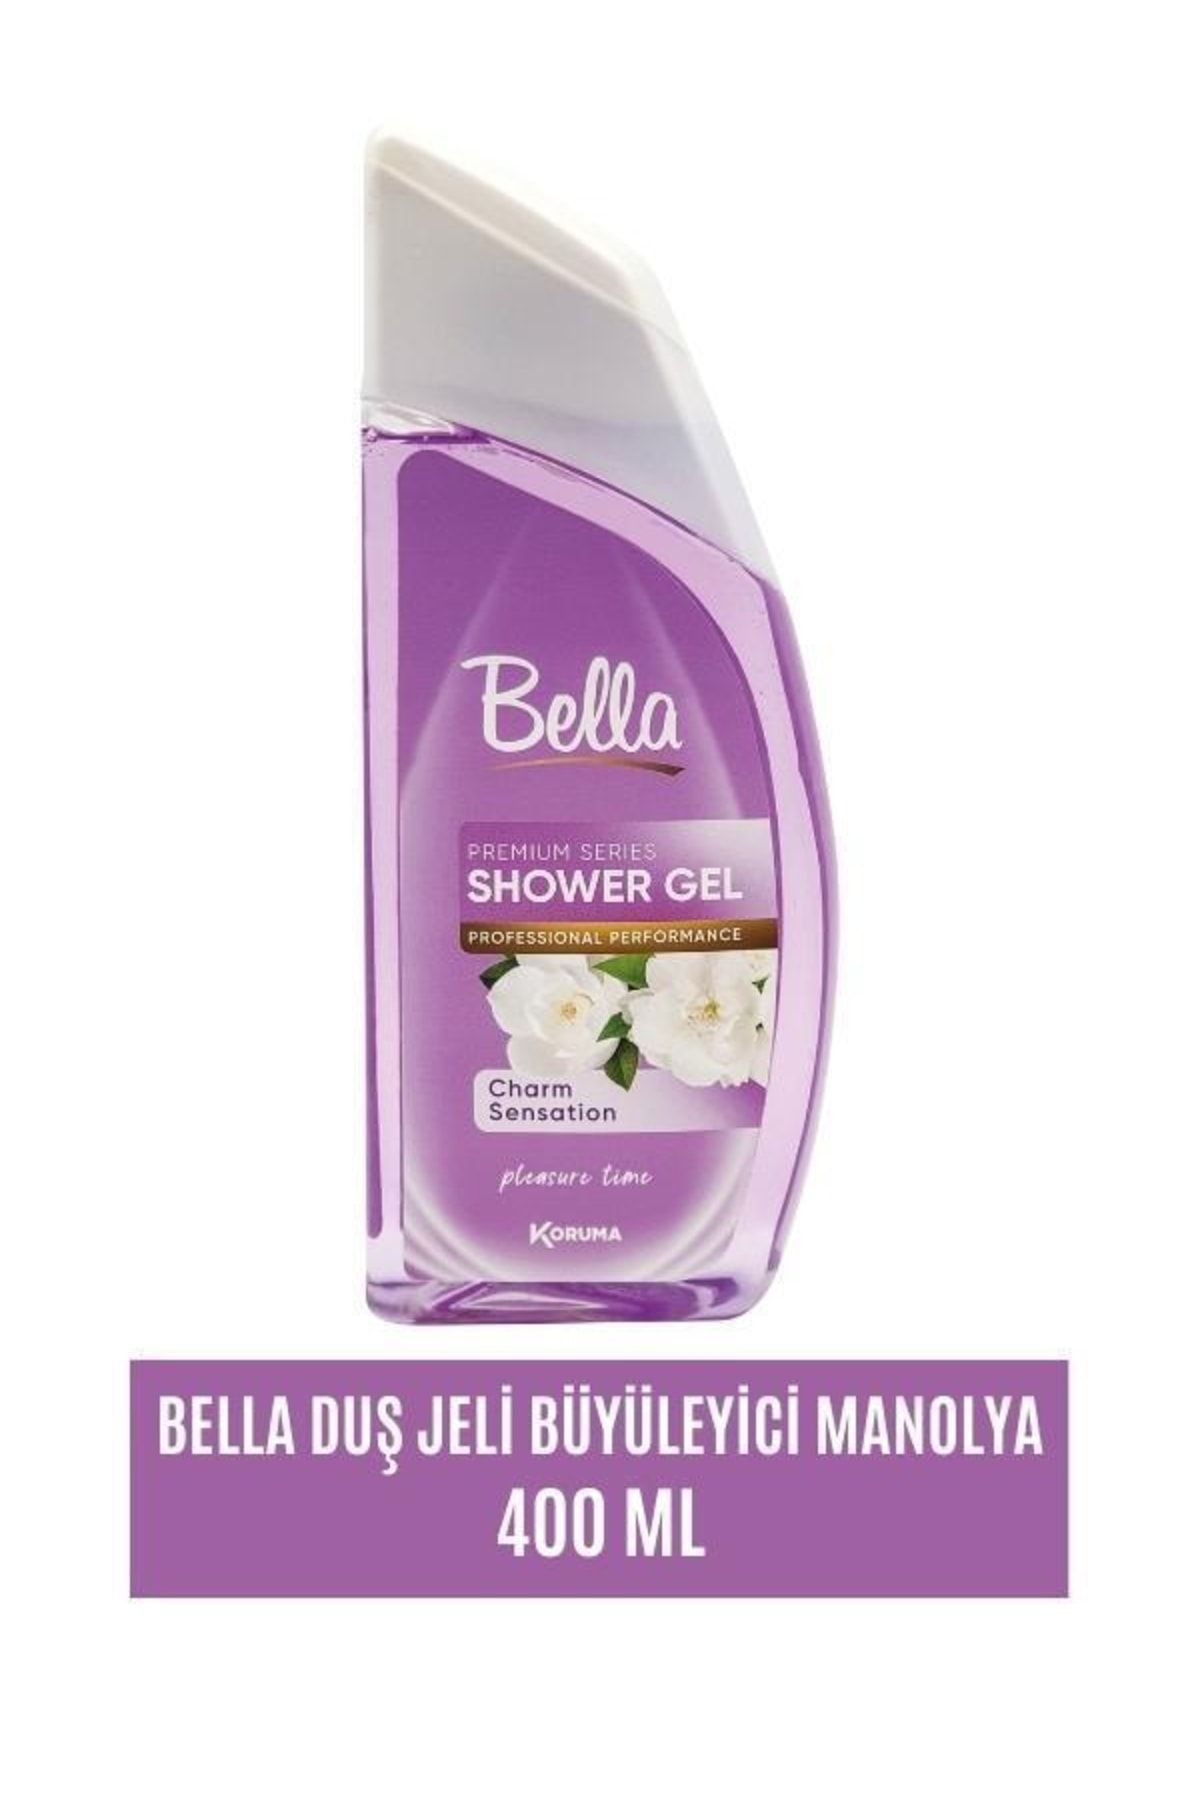 Bella Duş Jeli Büyüleyici Manolya - 400 Ml